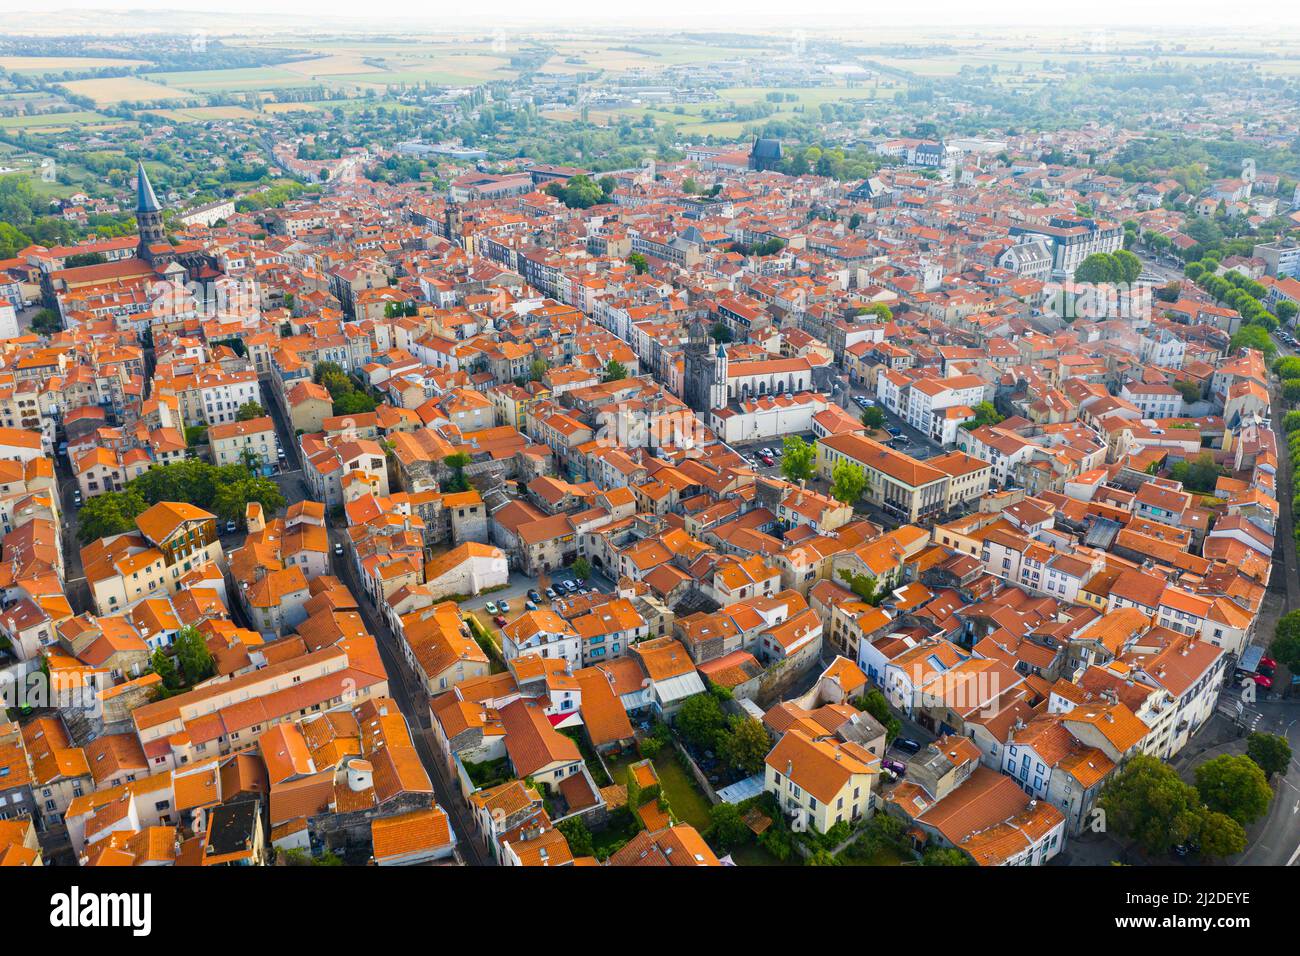 Vue aérienne du quartier résidentiel de Riom, Auvergne, France Banque D'Images